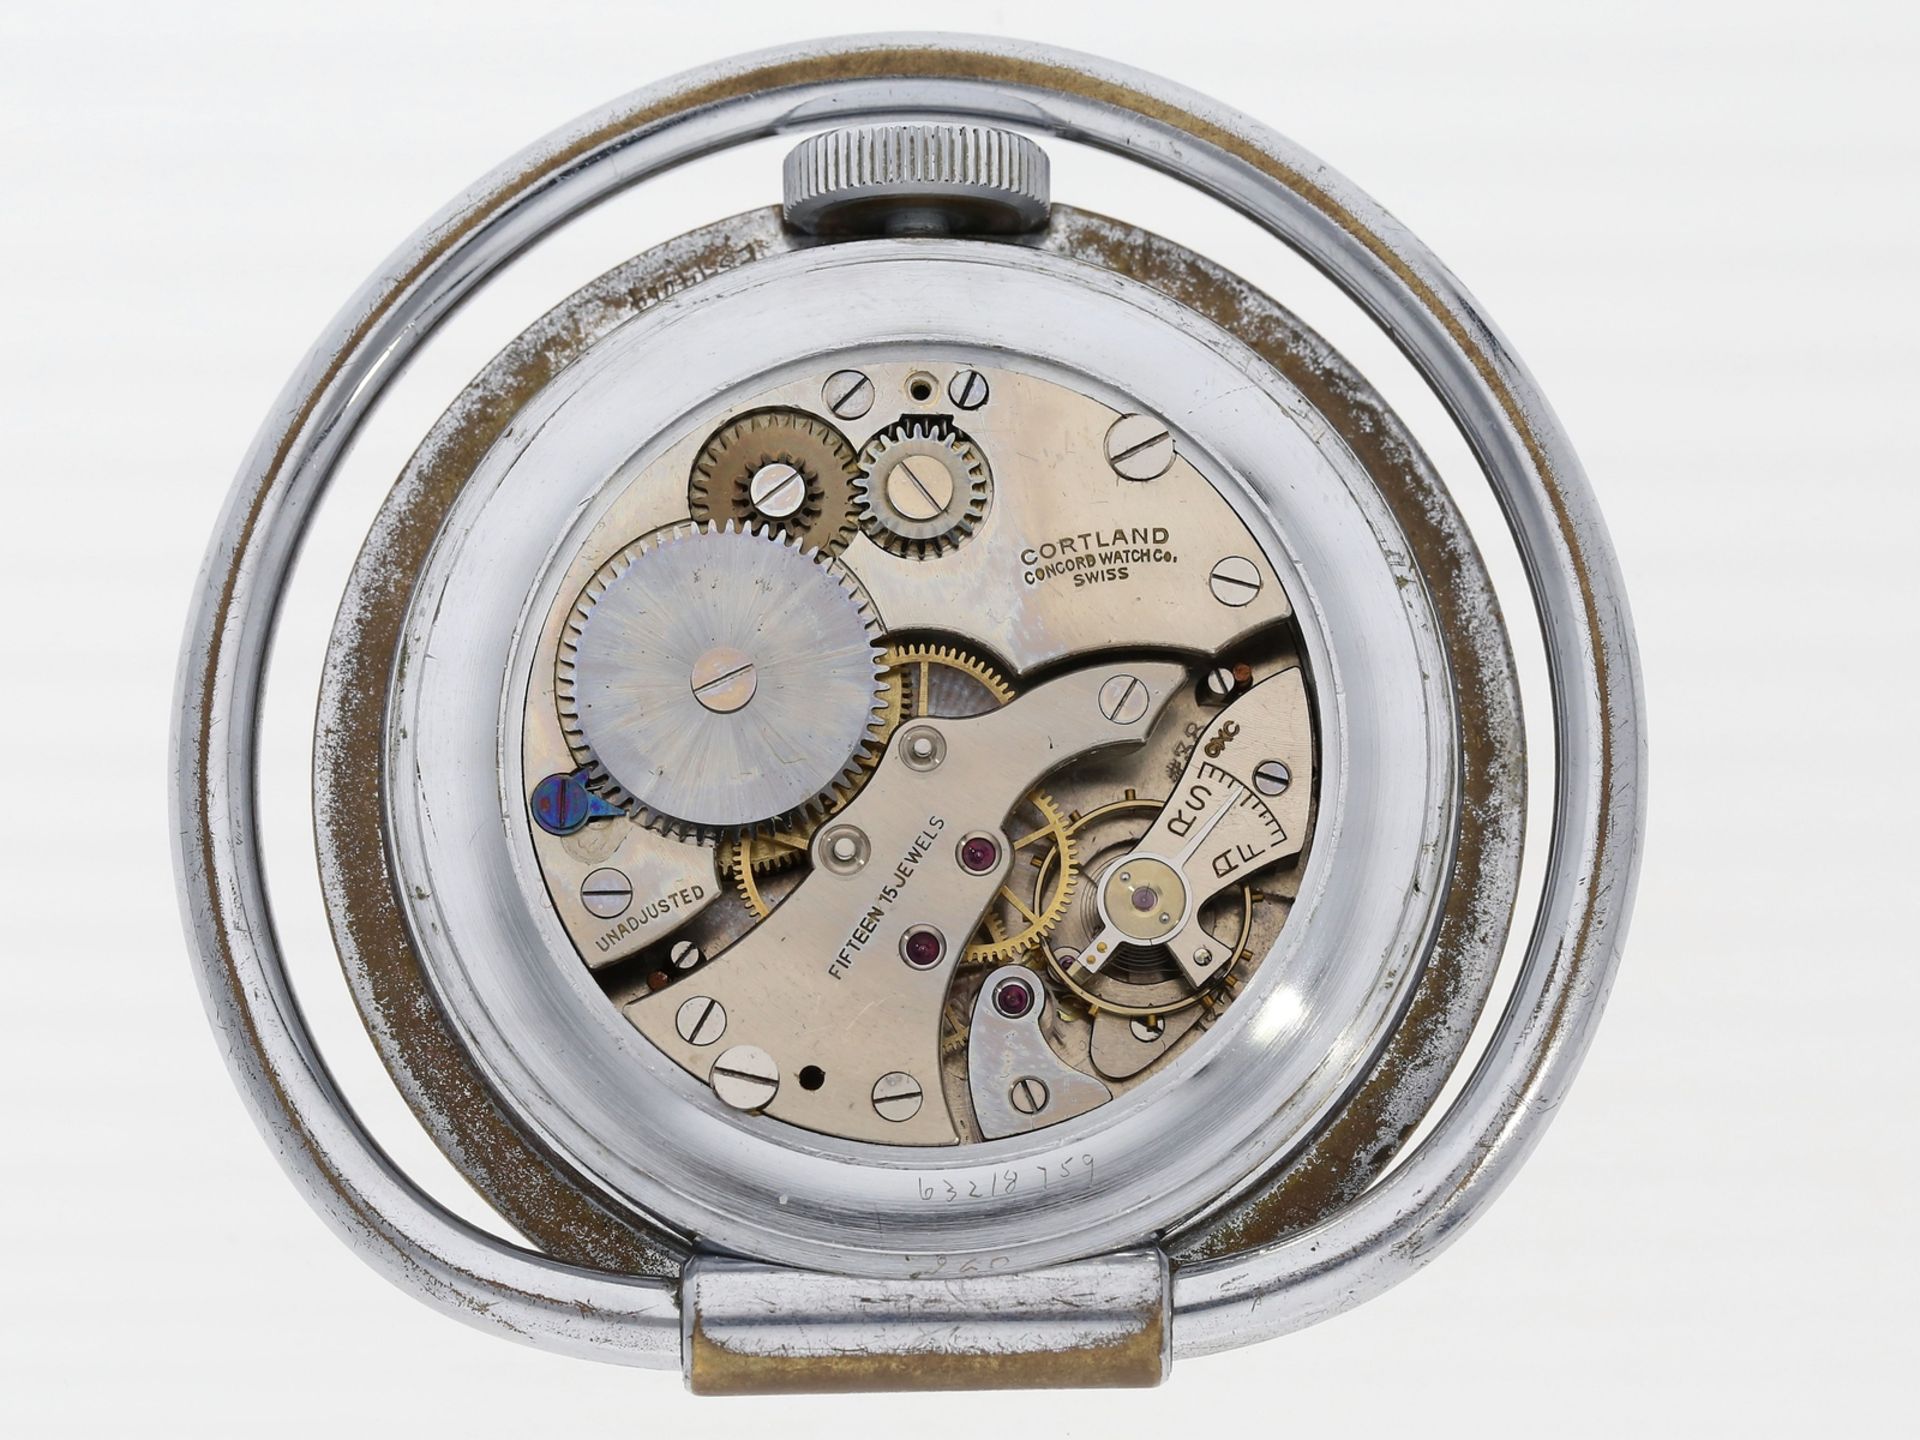 Armbanduhr: 2 seltene vintage Herrenuhren, Chronographen der Marke Honore, Handaufzug, um 1975 - Bild 3 aus 4